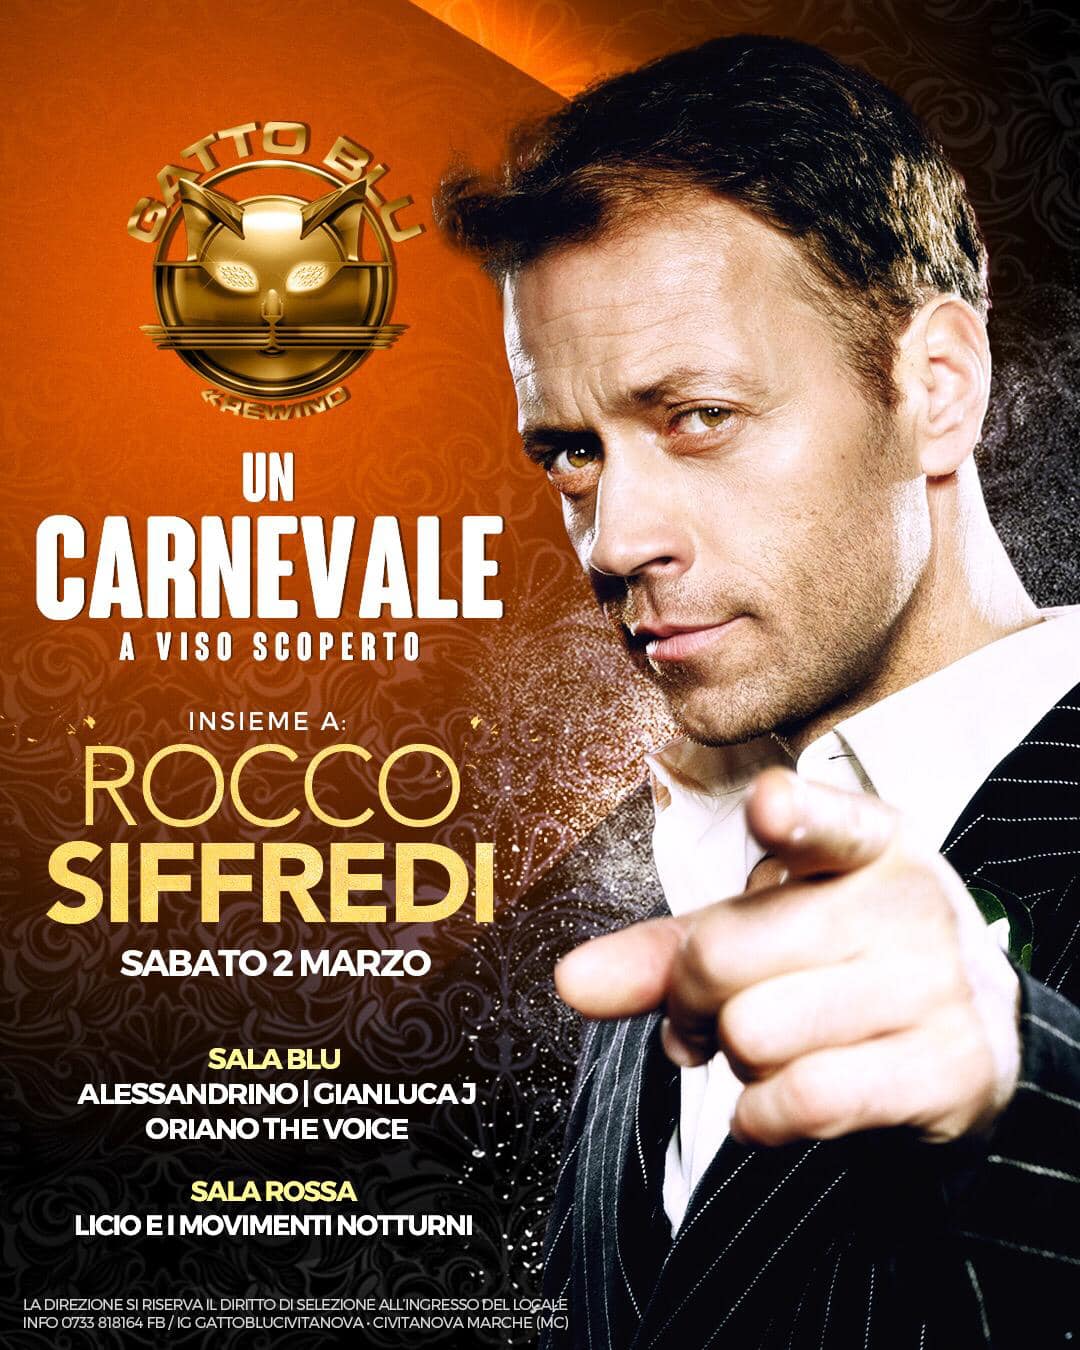 Carnevale con Rocco Siffredi discoteca Gatto Blu Civitanova Marche